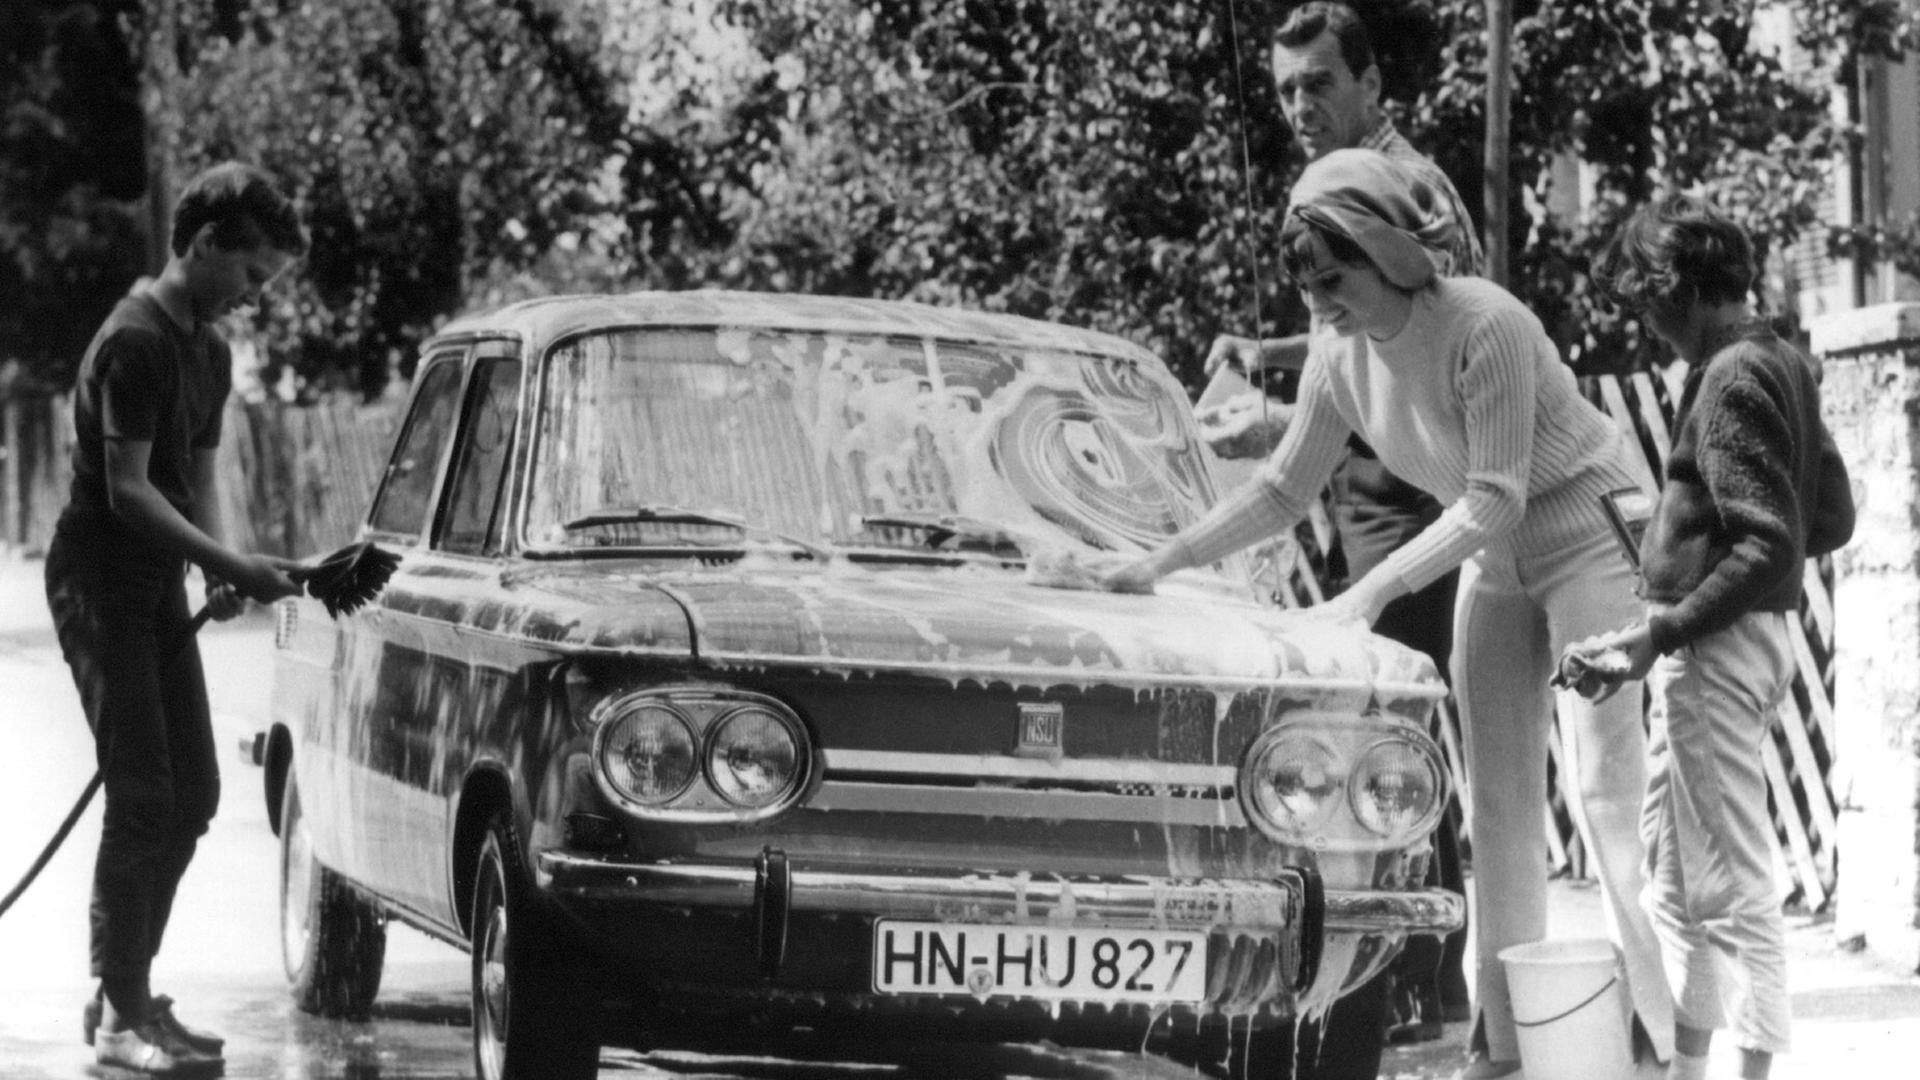 Die Liebe zur individuellen Mobilität: Familie 1967 beim Waschen eines Pkw der Marke NSU.